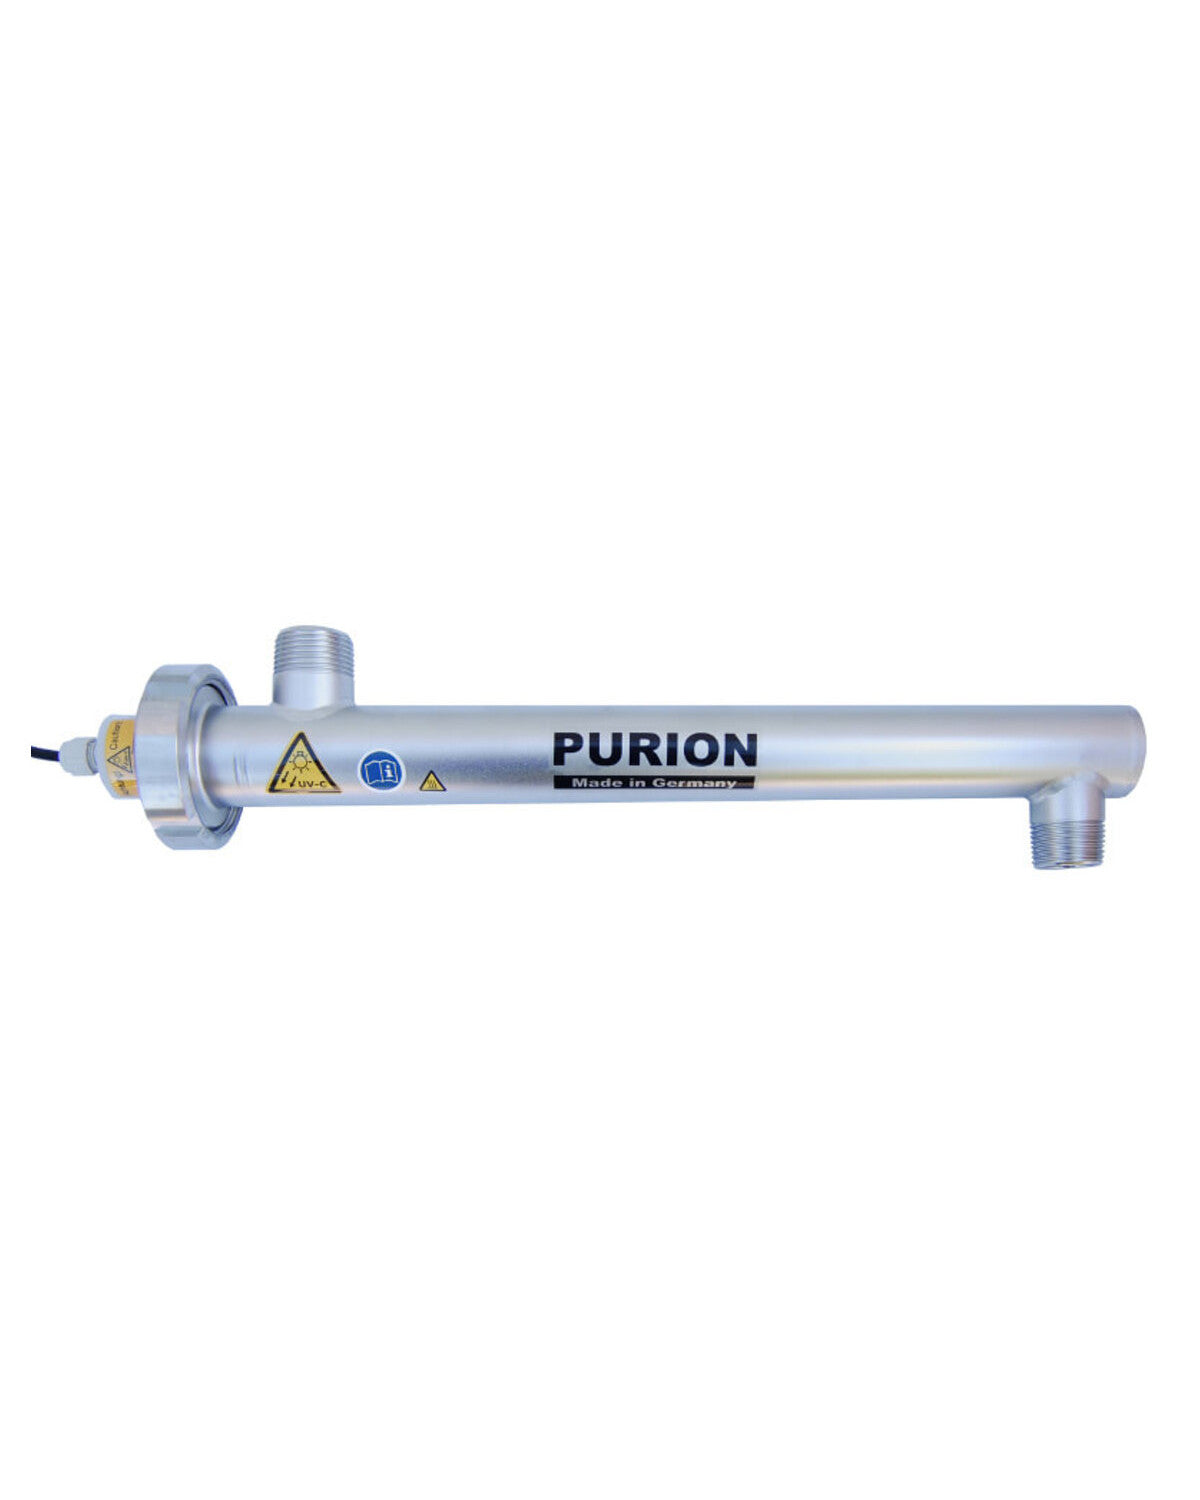 Die Purion GmbH ist die führende Marke im Bereich der Trinkwasserdesinfektion und bietet eine Reihe innovativer Produkte wie PURION 1000 110 - 240 V AC OTC an, die für sauberes und sicheres Wasser sorgen. Mit PURION 1000 können sich Kunden auf die Qualität ihrer Wasseraufbereitungslösung verlassen.